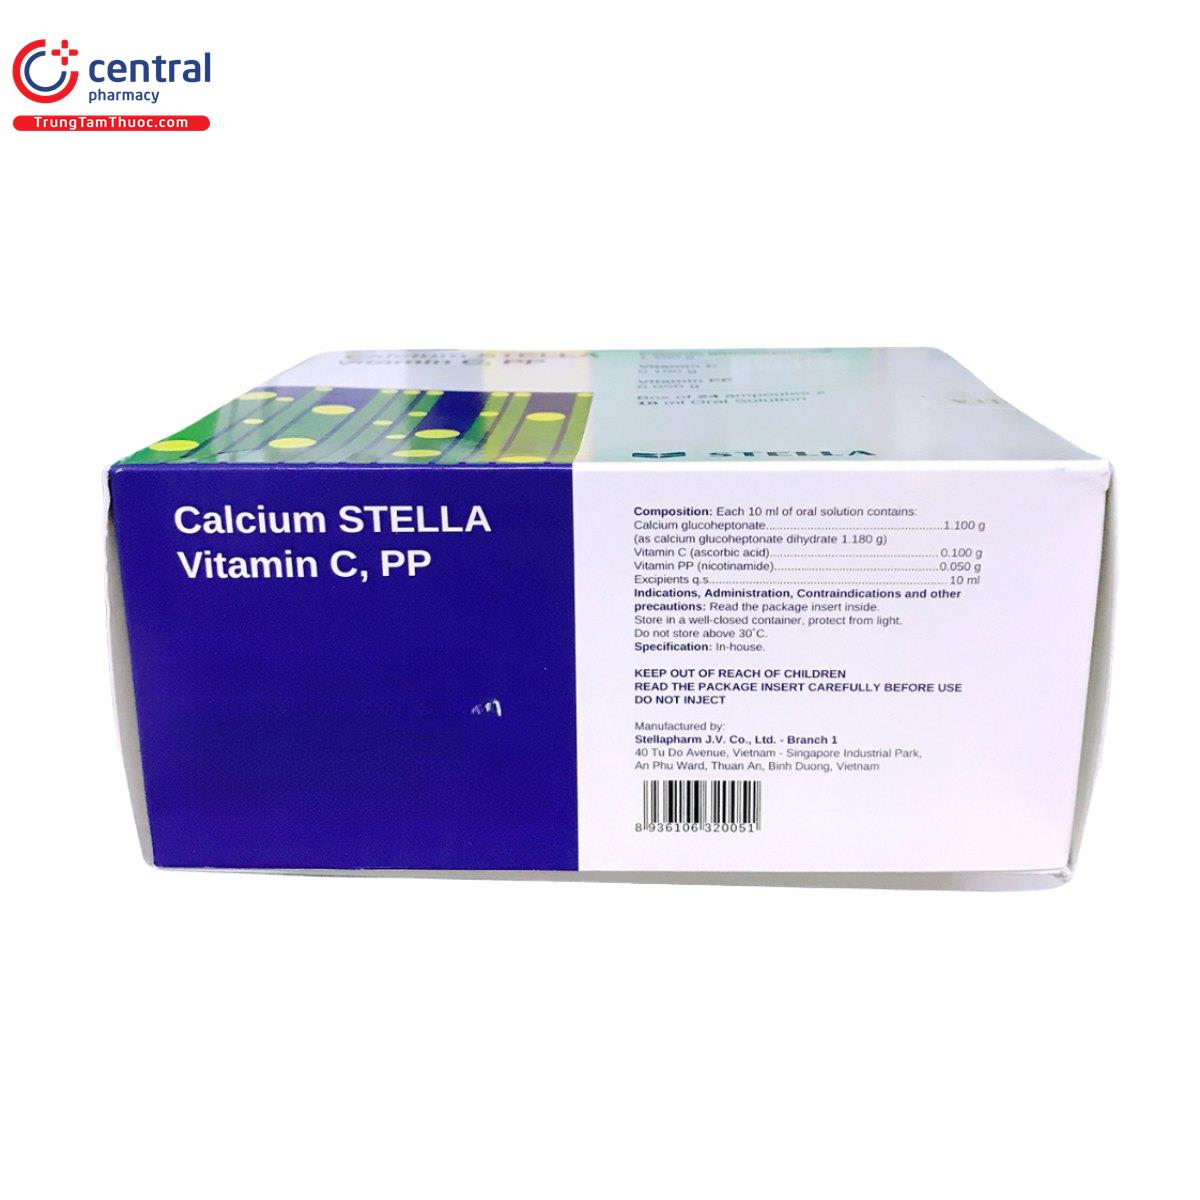 calcium stella vitamin c pp 6 A0127